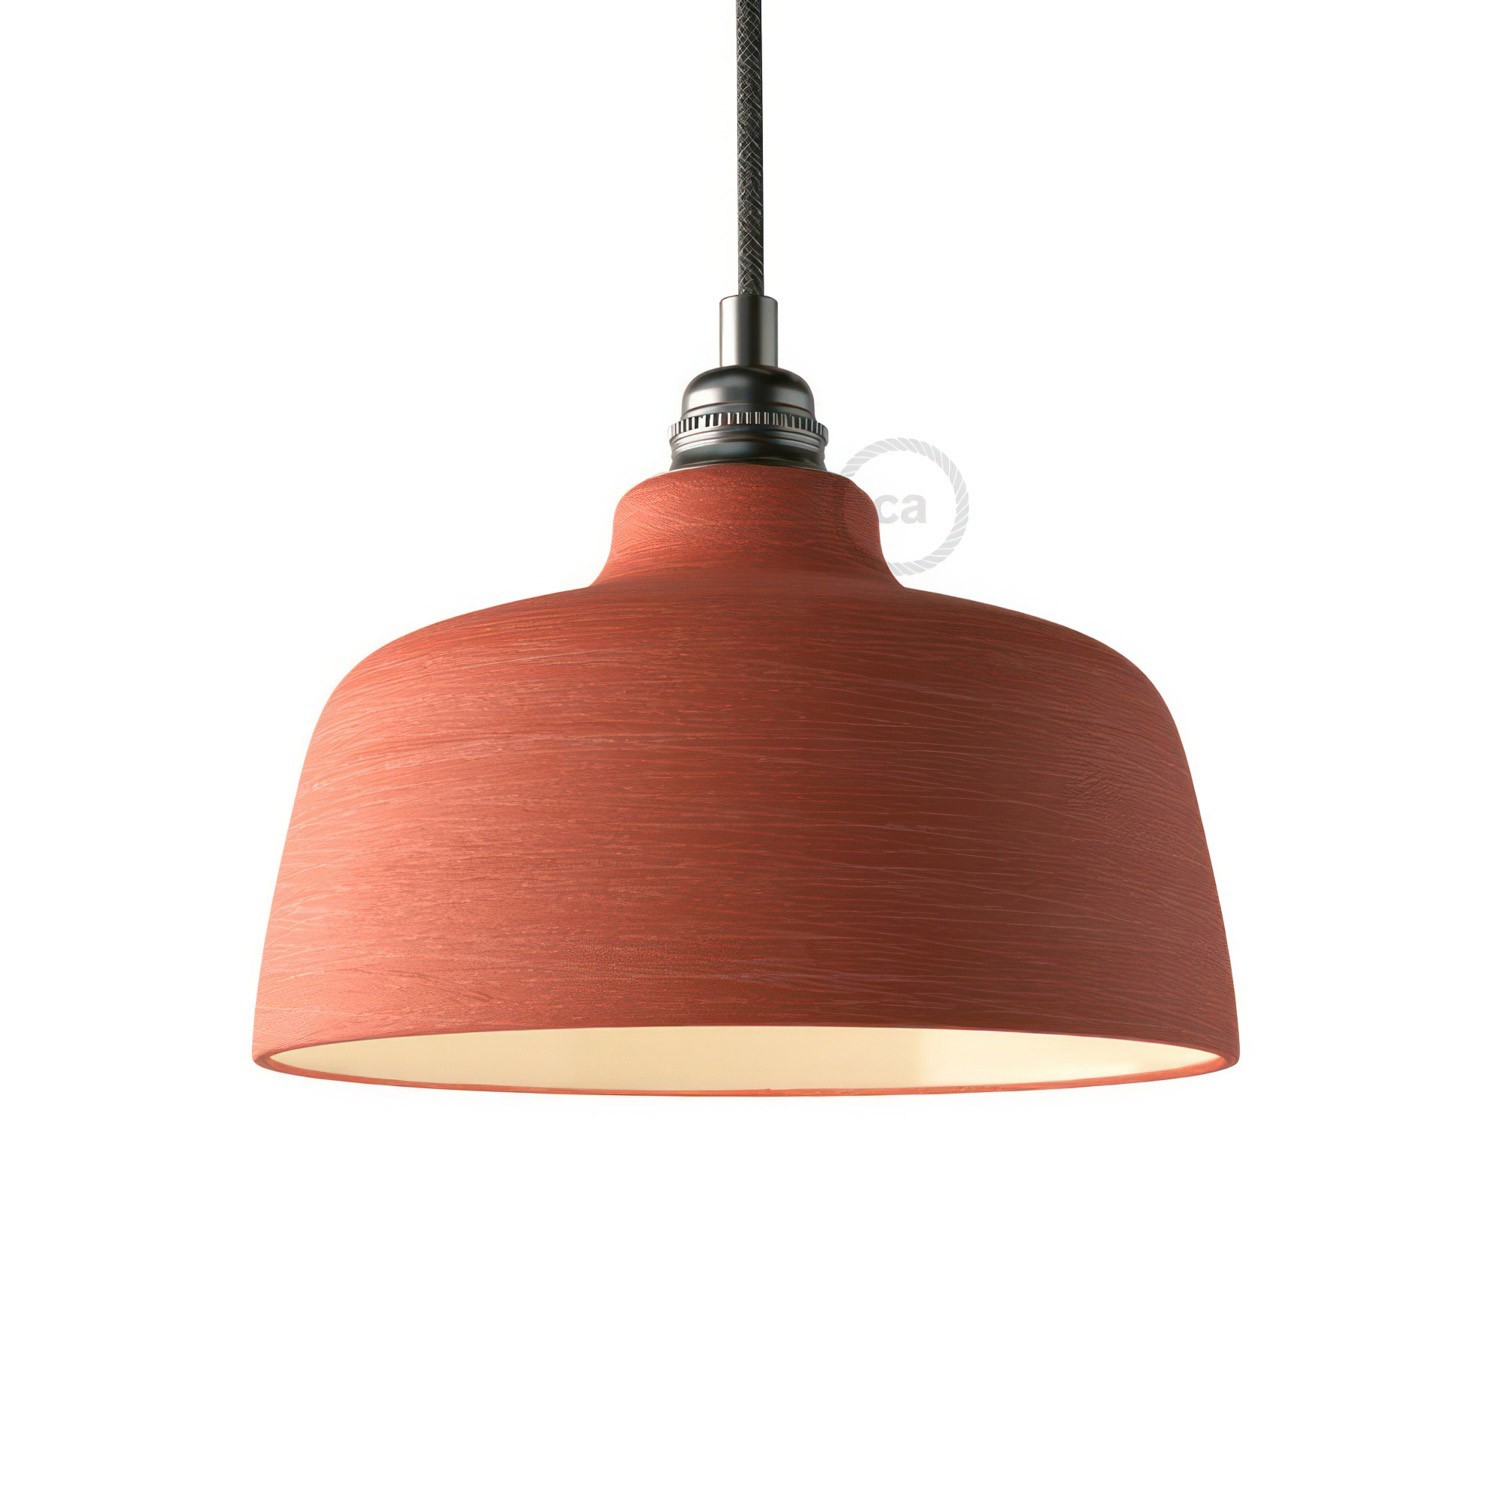 Coppa lampskärm i keramik, Materia kolletion - Tillverkad i Italien